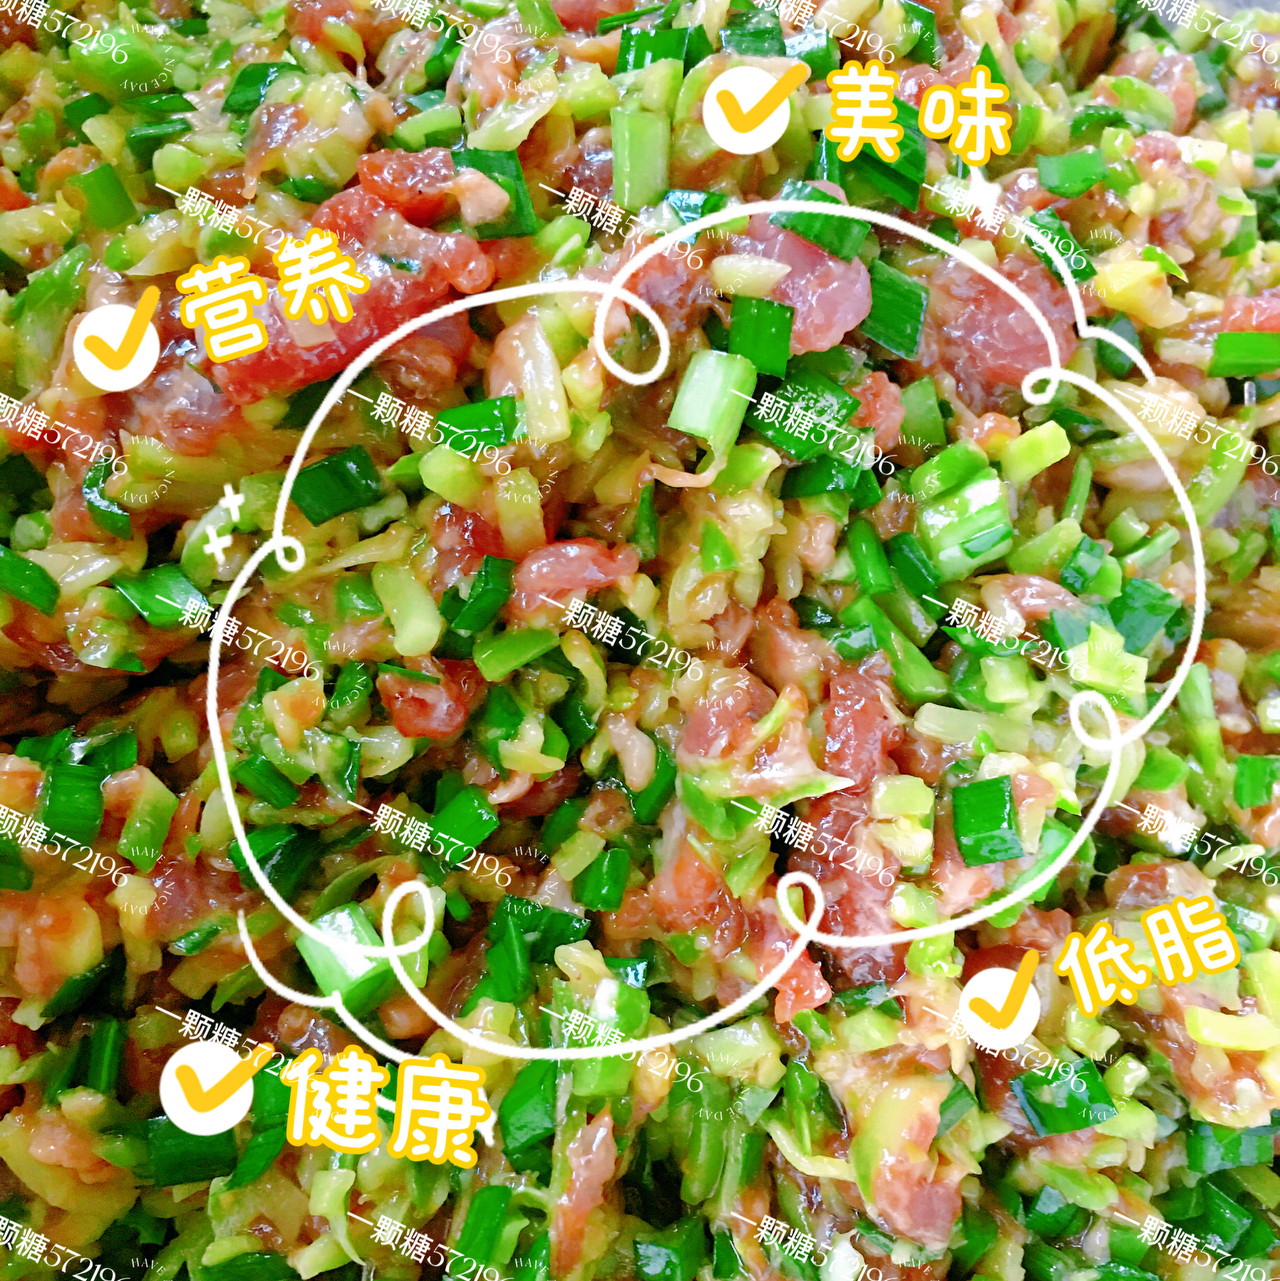 鲜嫩多汁/不腥不柴༄「方瓜鲜肉🥩饺子馅儿」༄的做法❣️❣️❣️